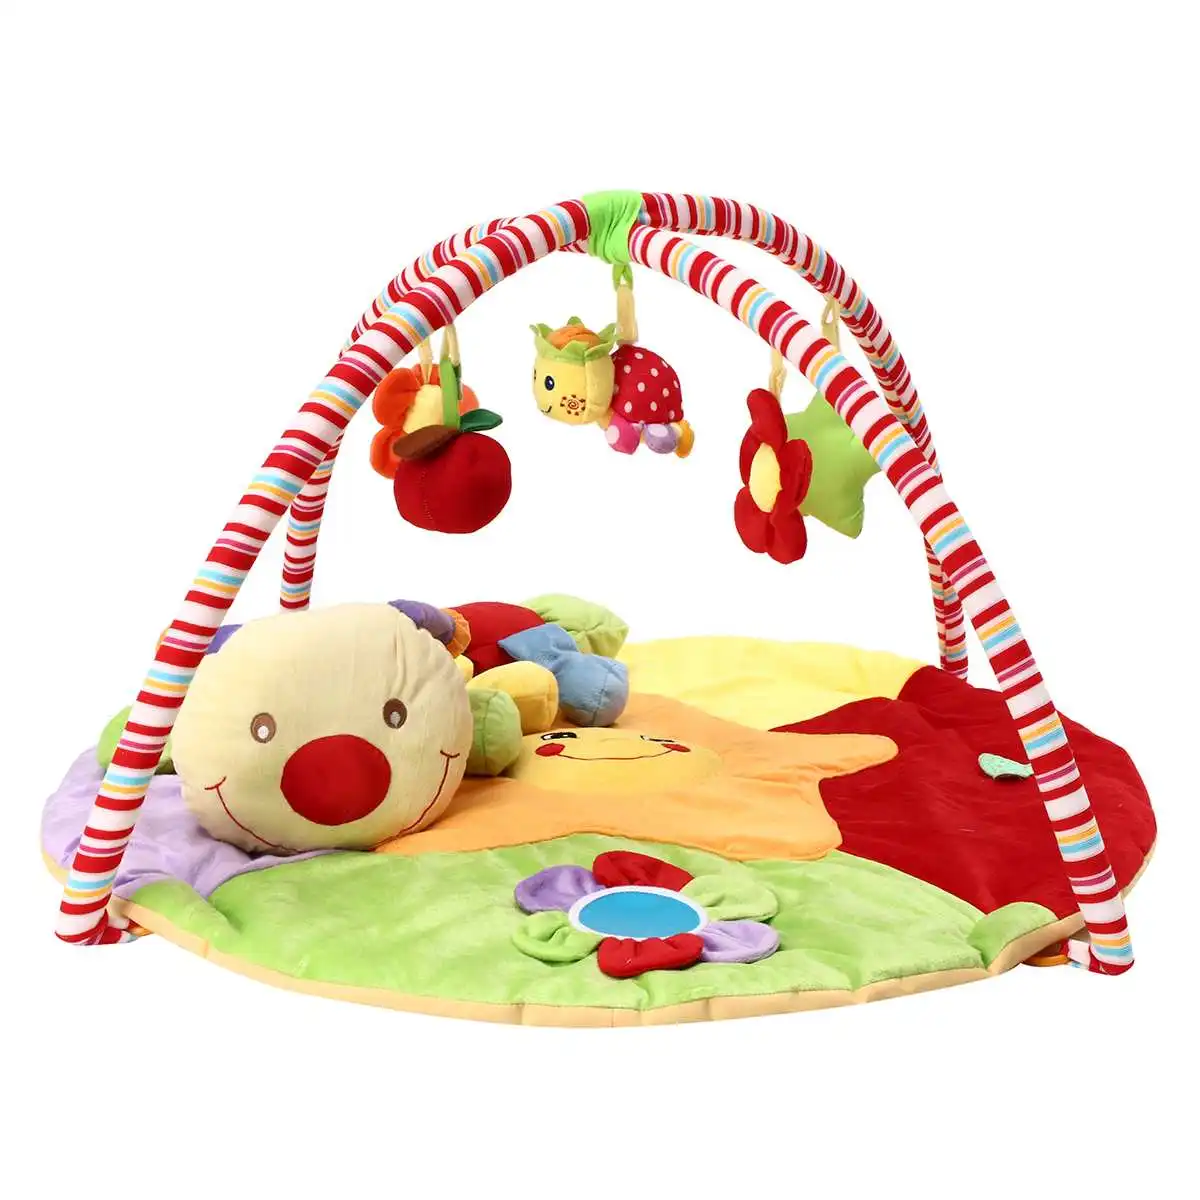 90X50 см детский музыкальный коврик бесплатно ползающий животик Время Тренажерный зал стойки Мягкие развивающие игрушки одеяло для малышей